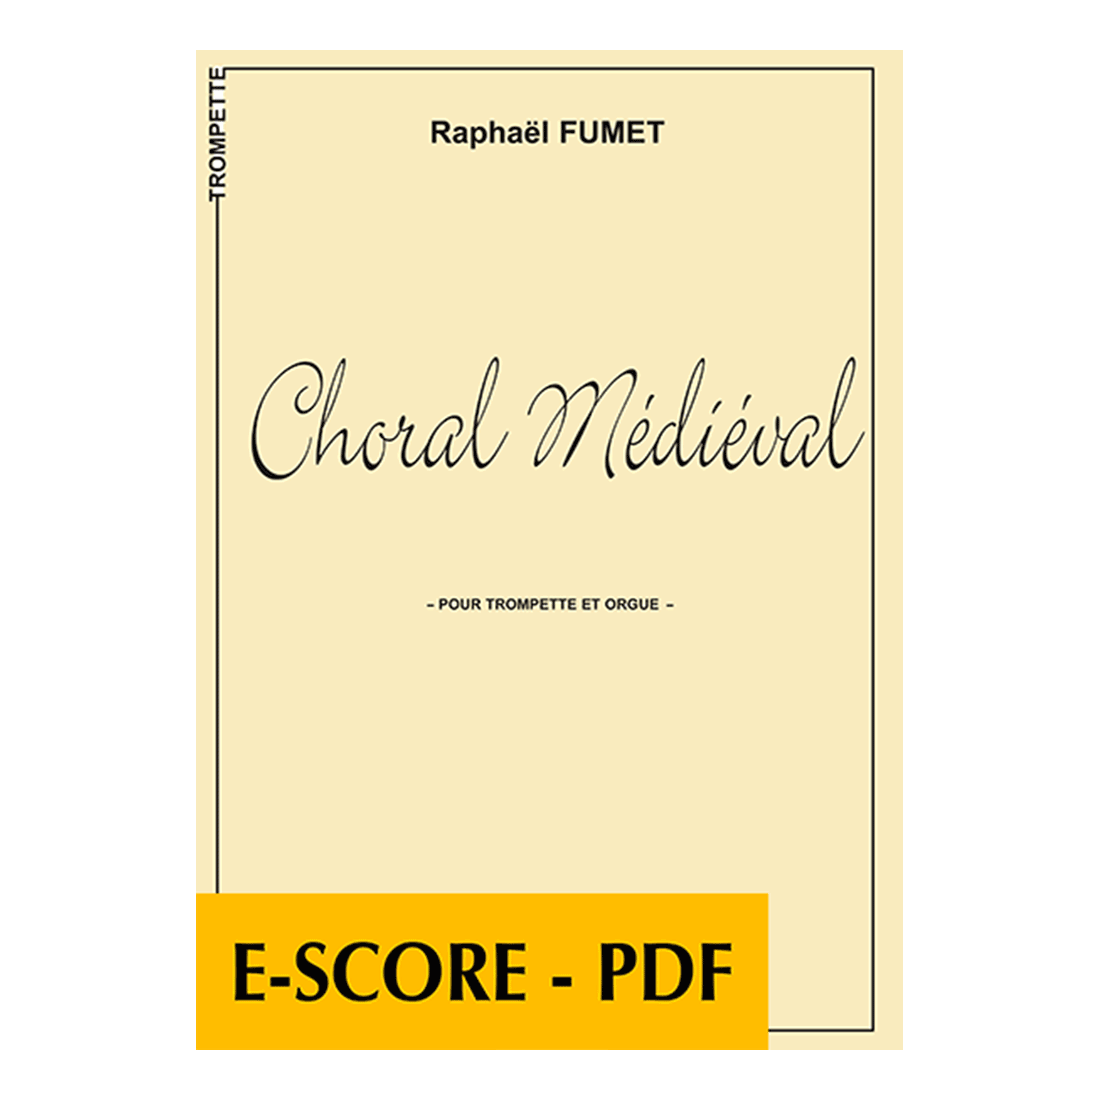 Choral médiéval für Trompete und Orgel - E-score PDF